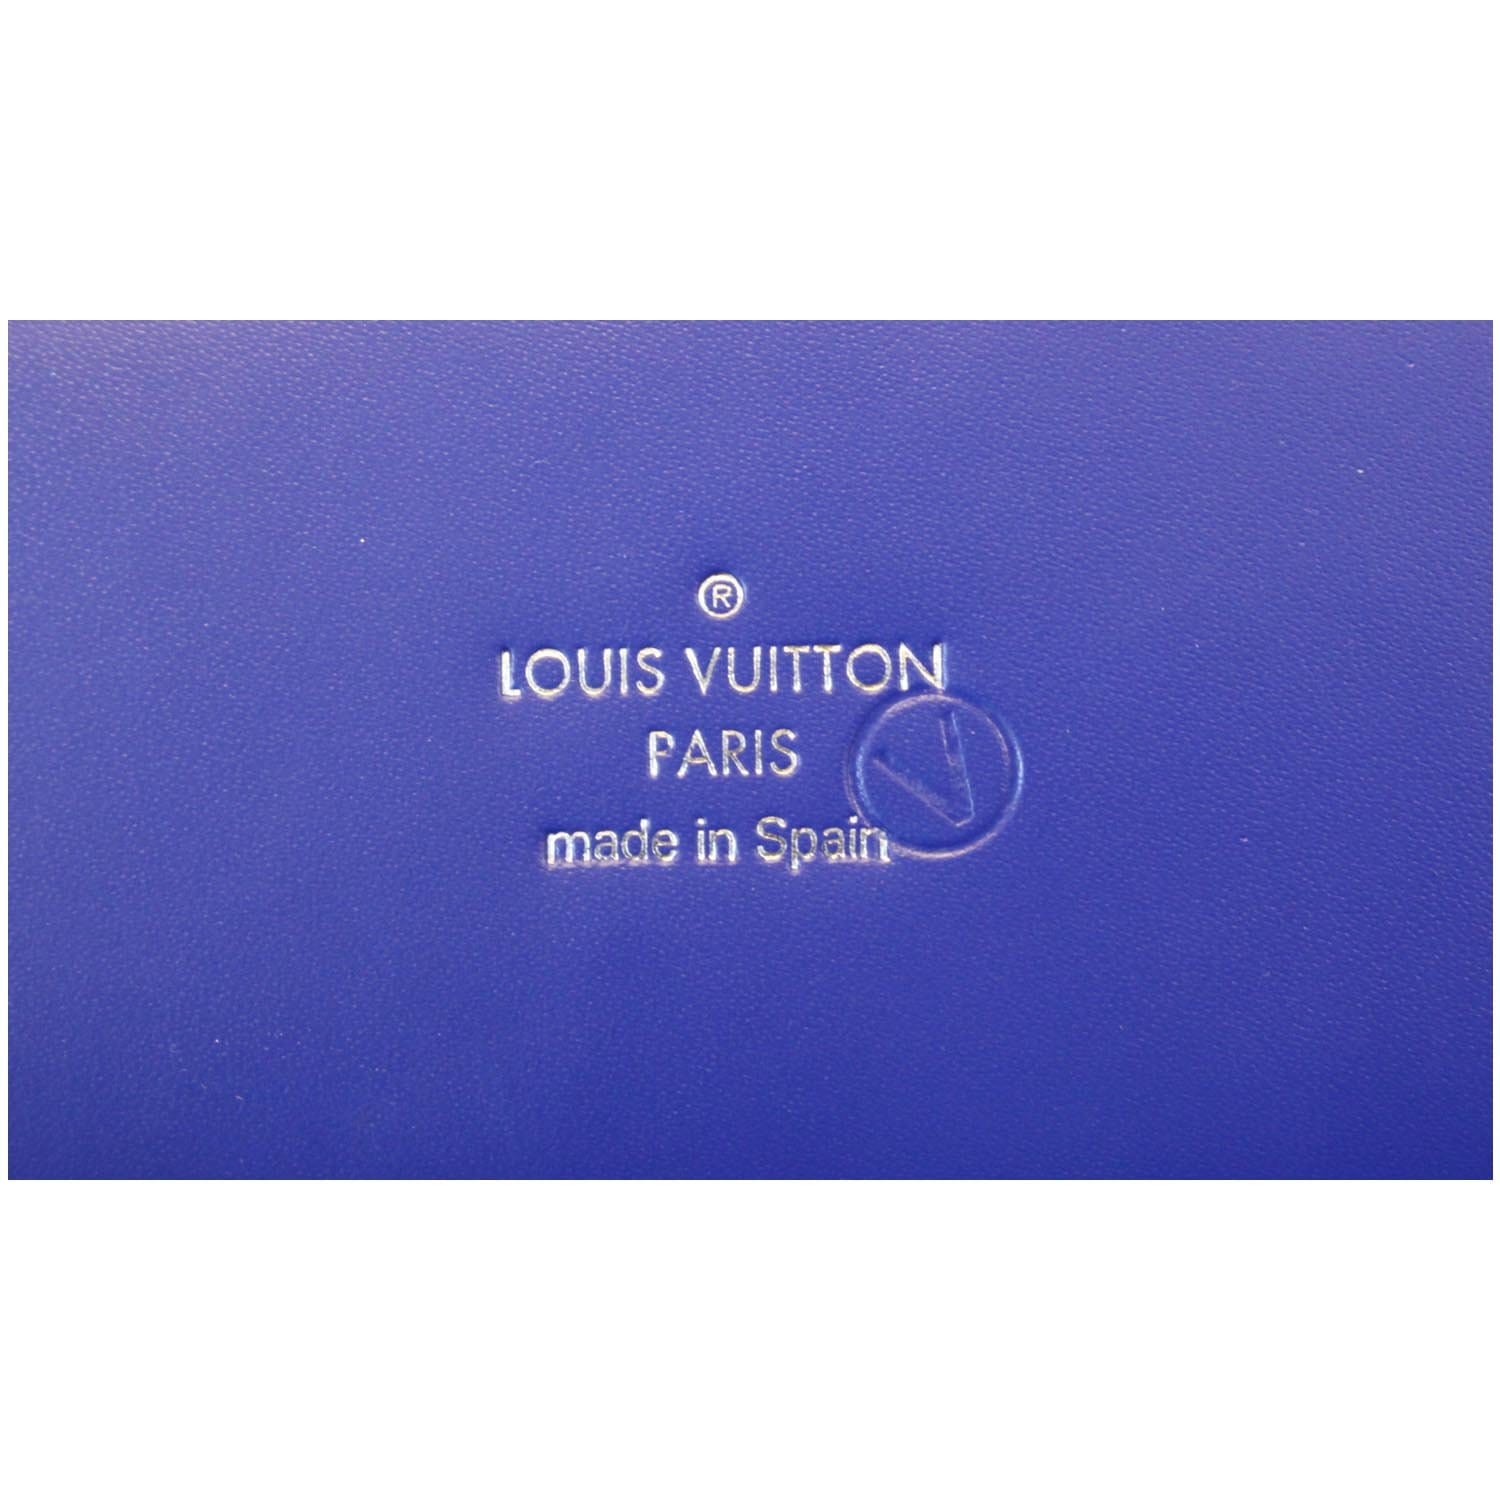 Louis Vuitton Phenix Pm Epilepsy